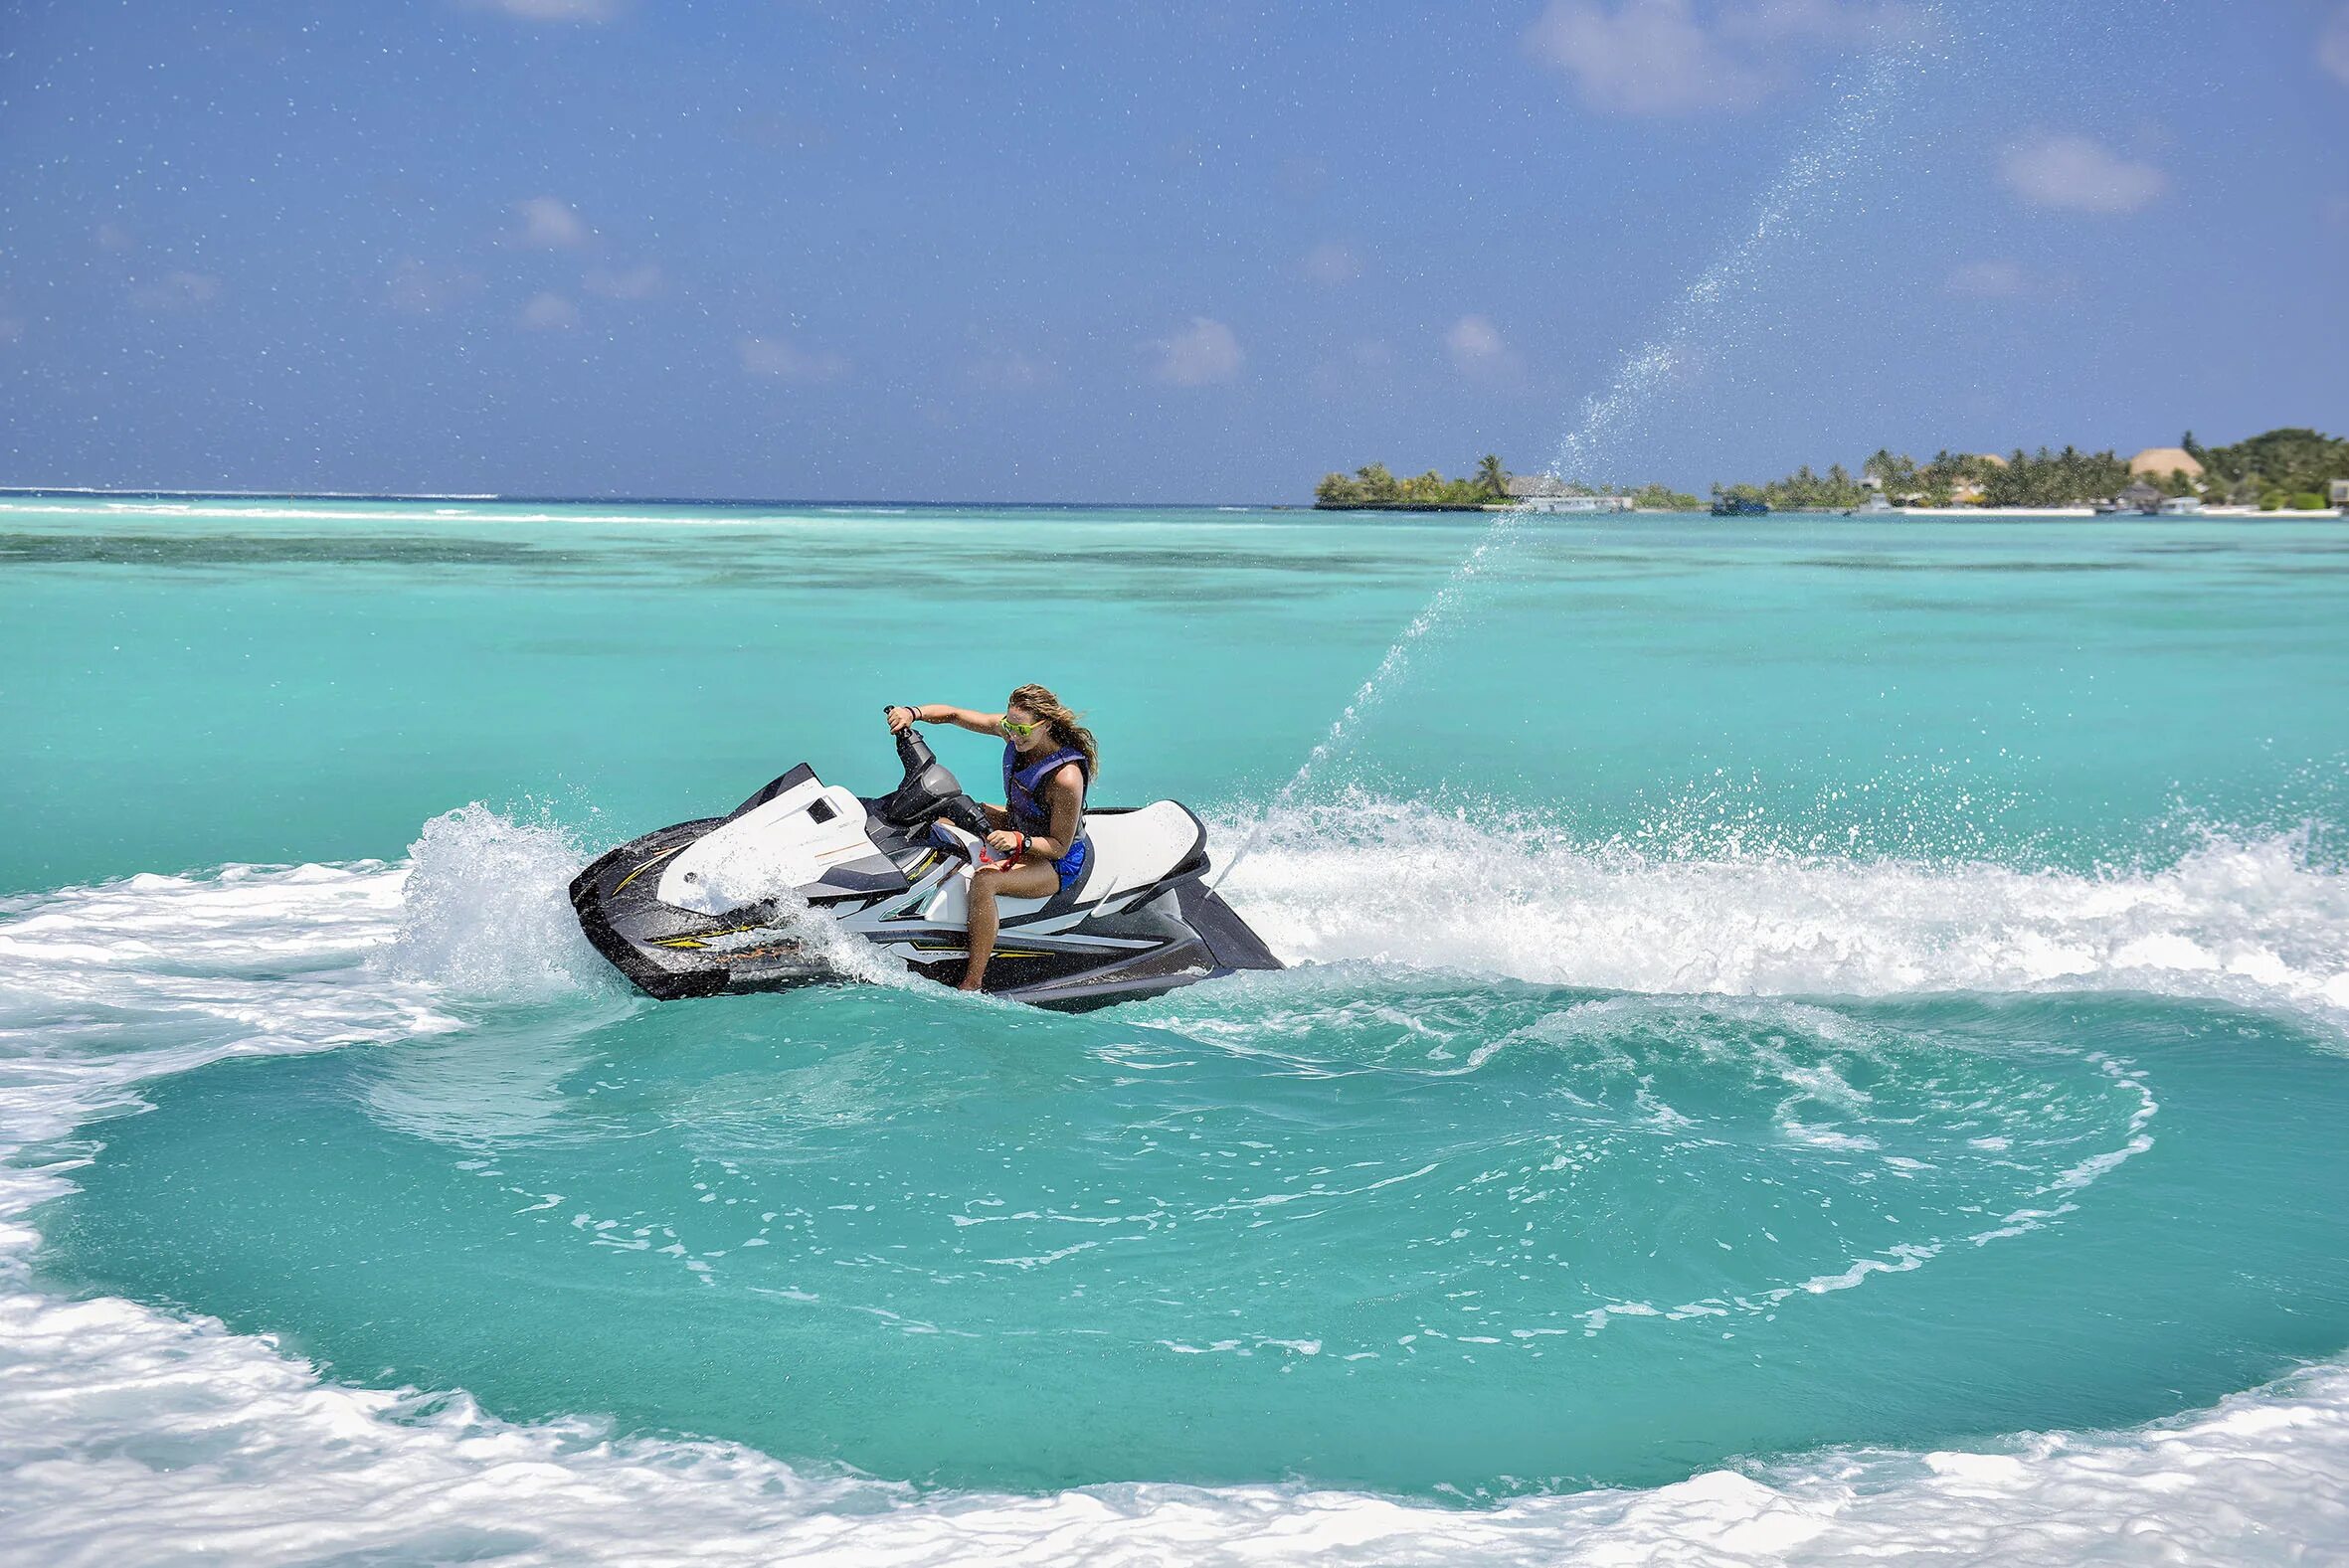 Джетски Мальдивы. Гидроцикл на Мальдивах. Водный мотоцикл развлечения. Водные развлечения Мальдивы.